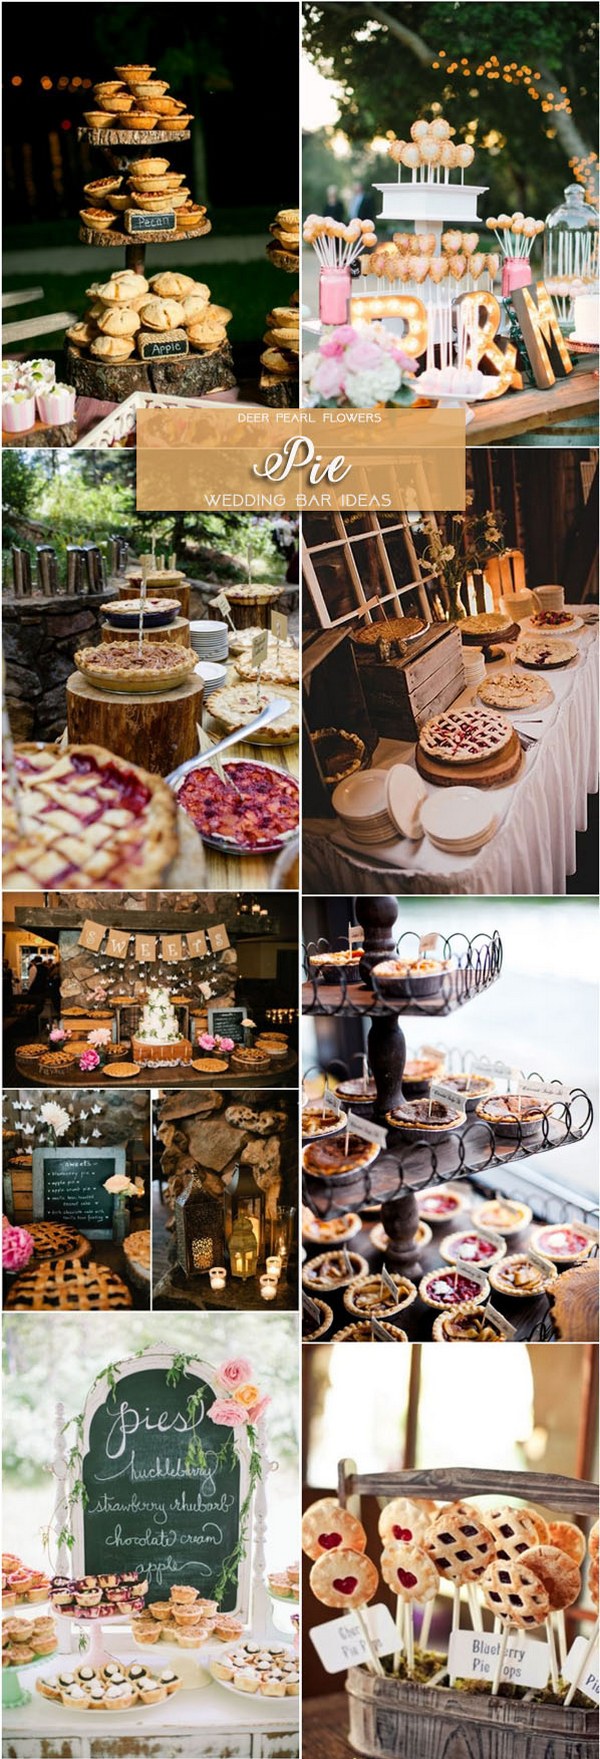 Pie wedding dessert food bar ideas for wedding reception